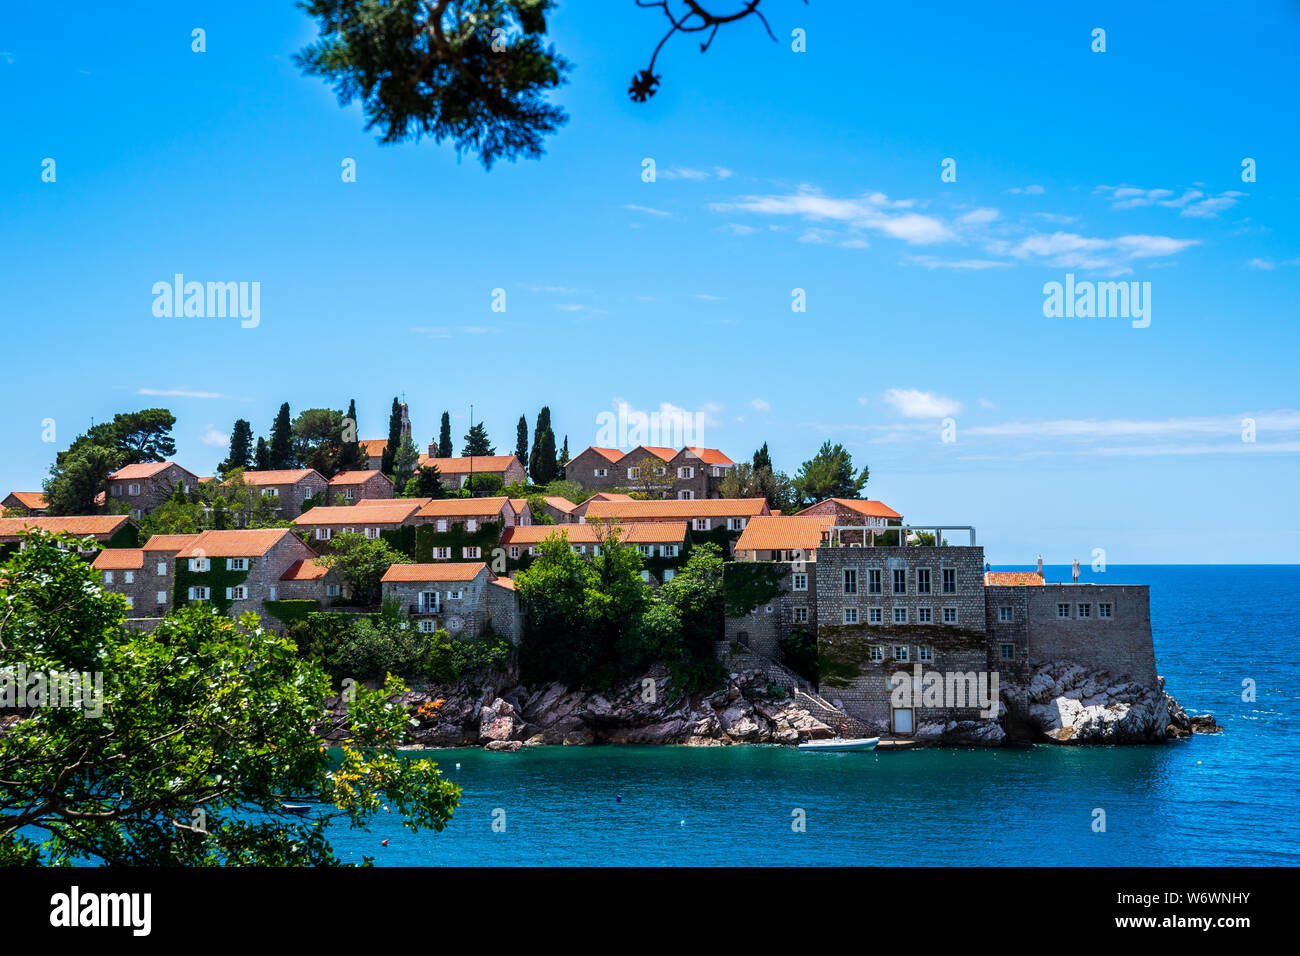 Montenegro, berühmten antiken Häuser aus Stein mit roten Dächern auf felsigen Insel Sveti Stefan im Sommer Urlaub in einer wunderschönen Natur Landschaft Stockfoto